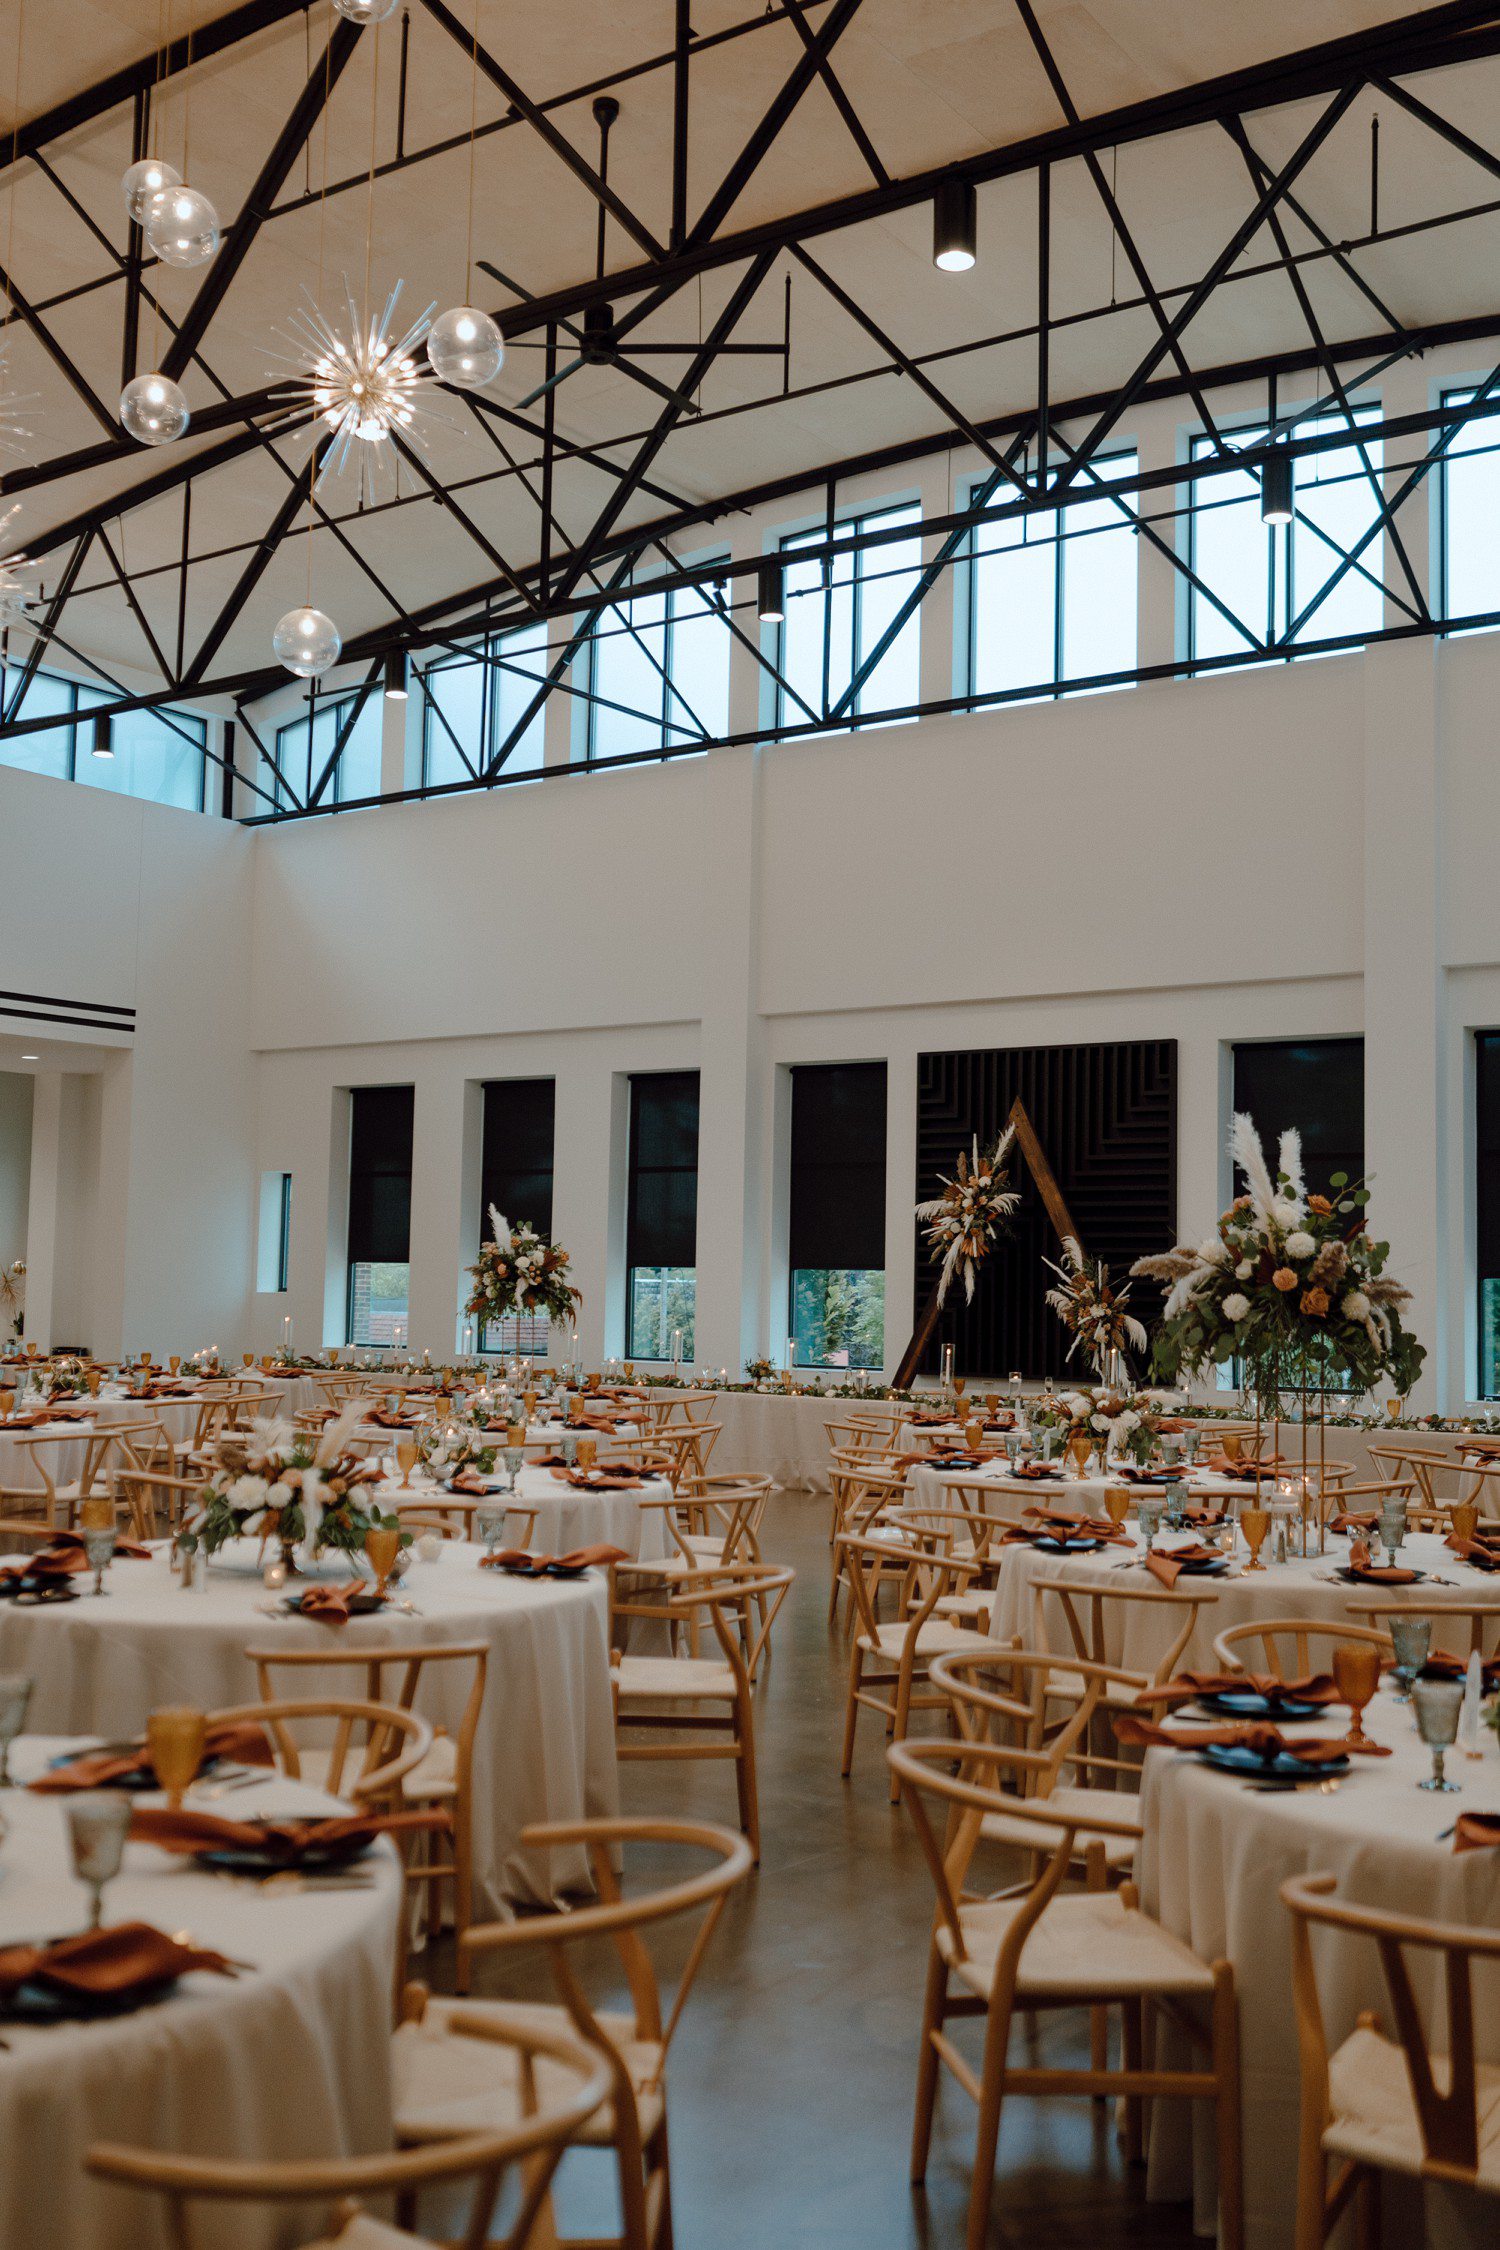 Indoor wedding reception at Leona Rd venue.